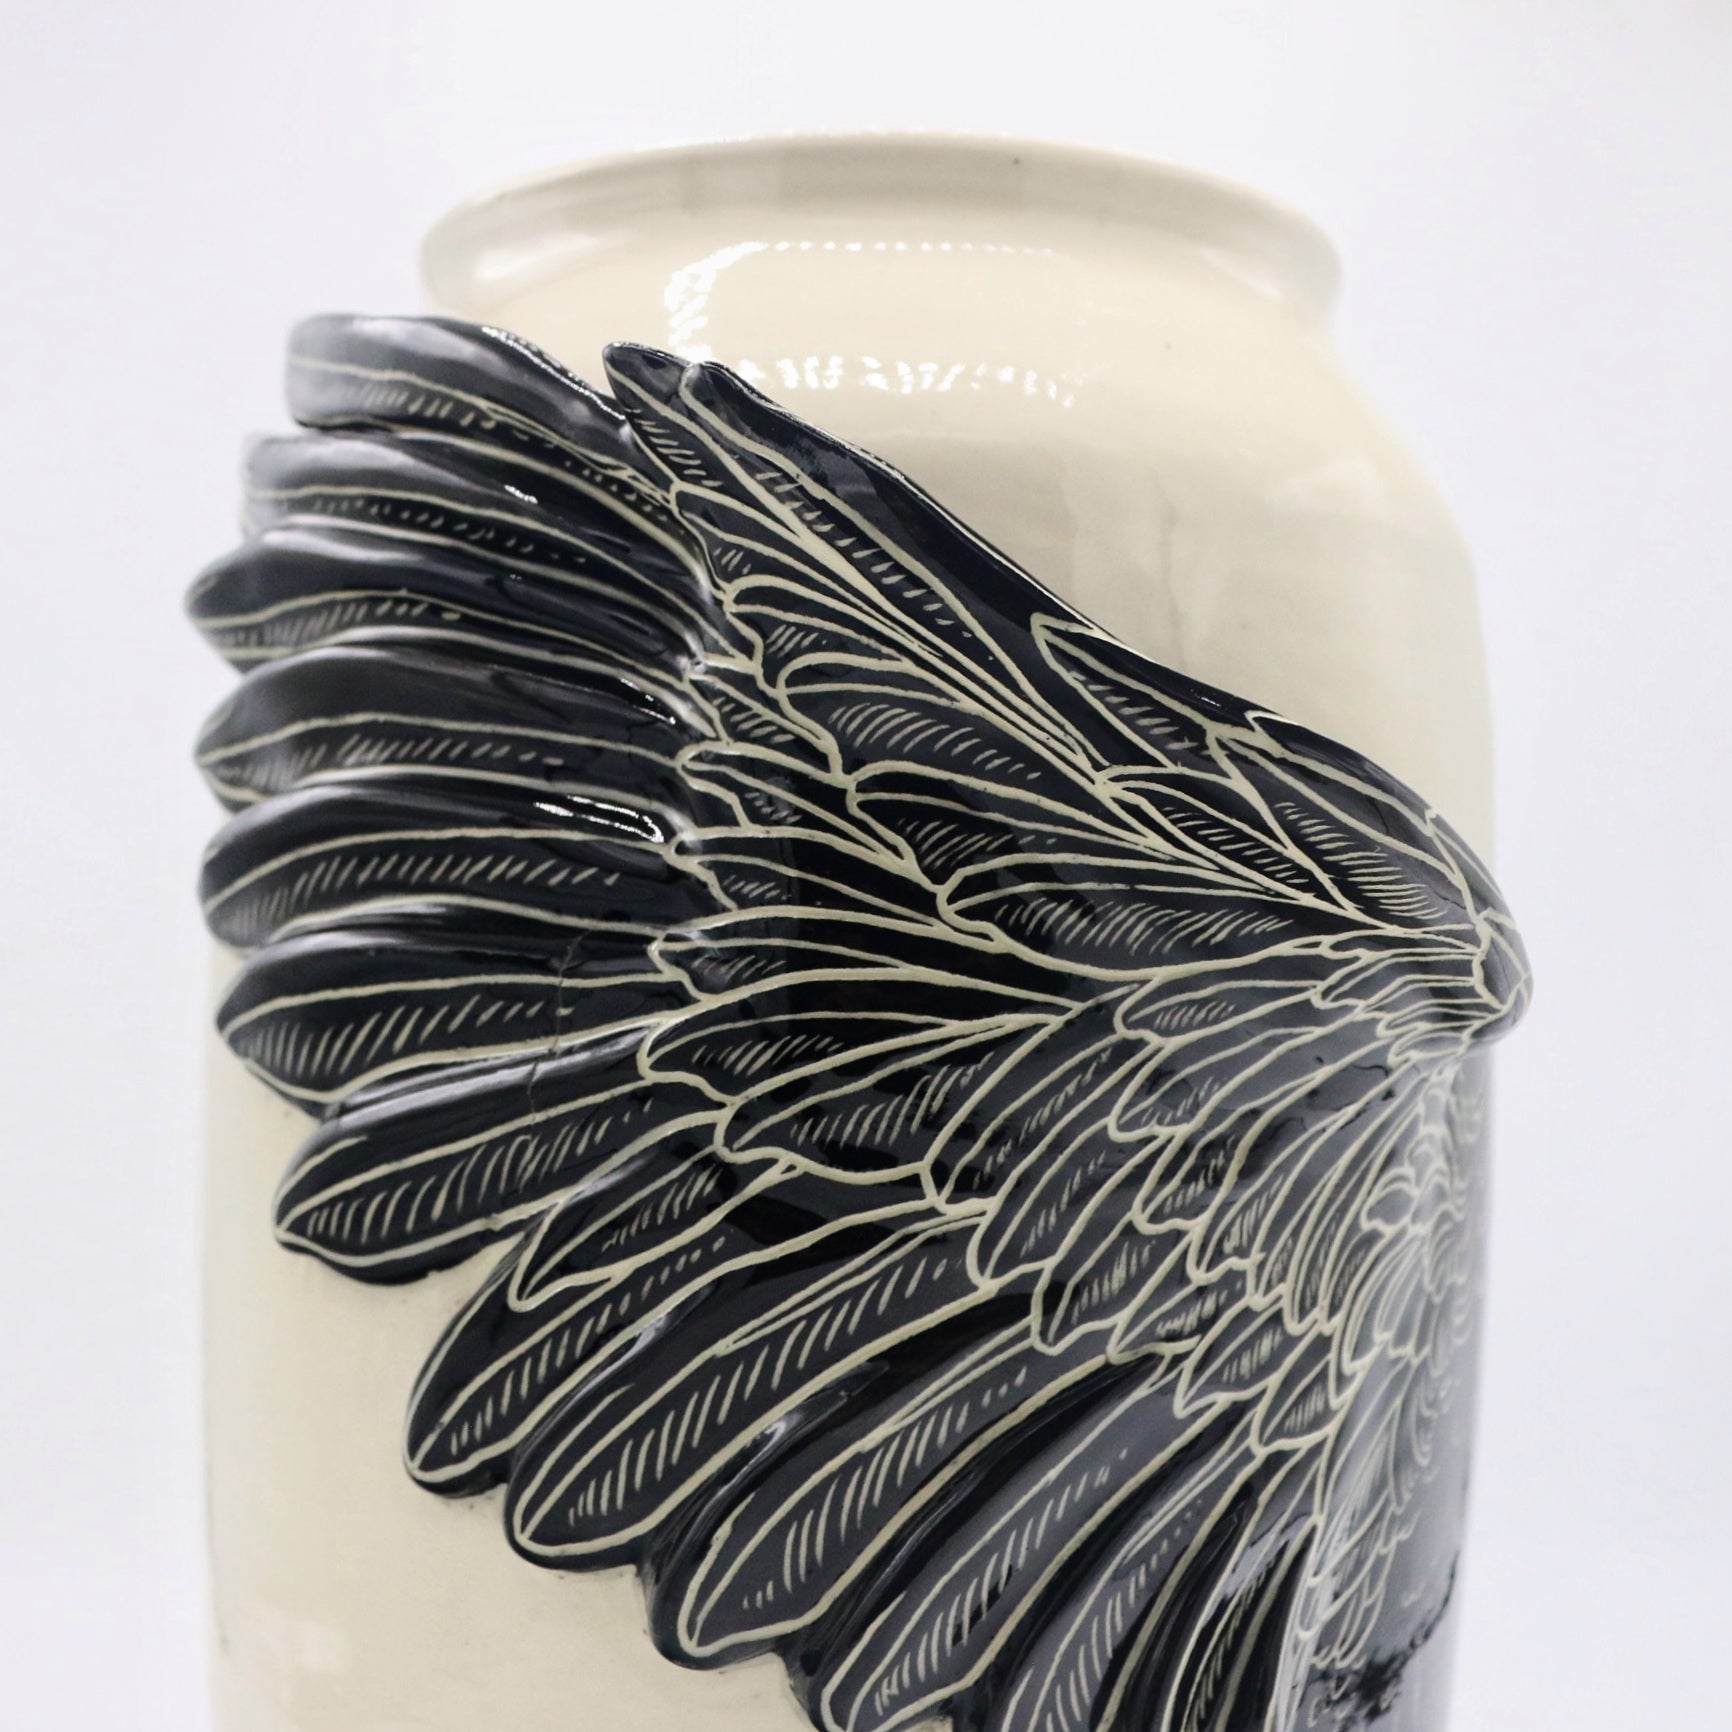 Black Crow Vase 2